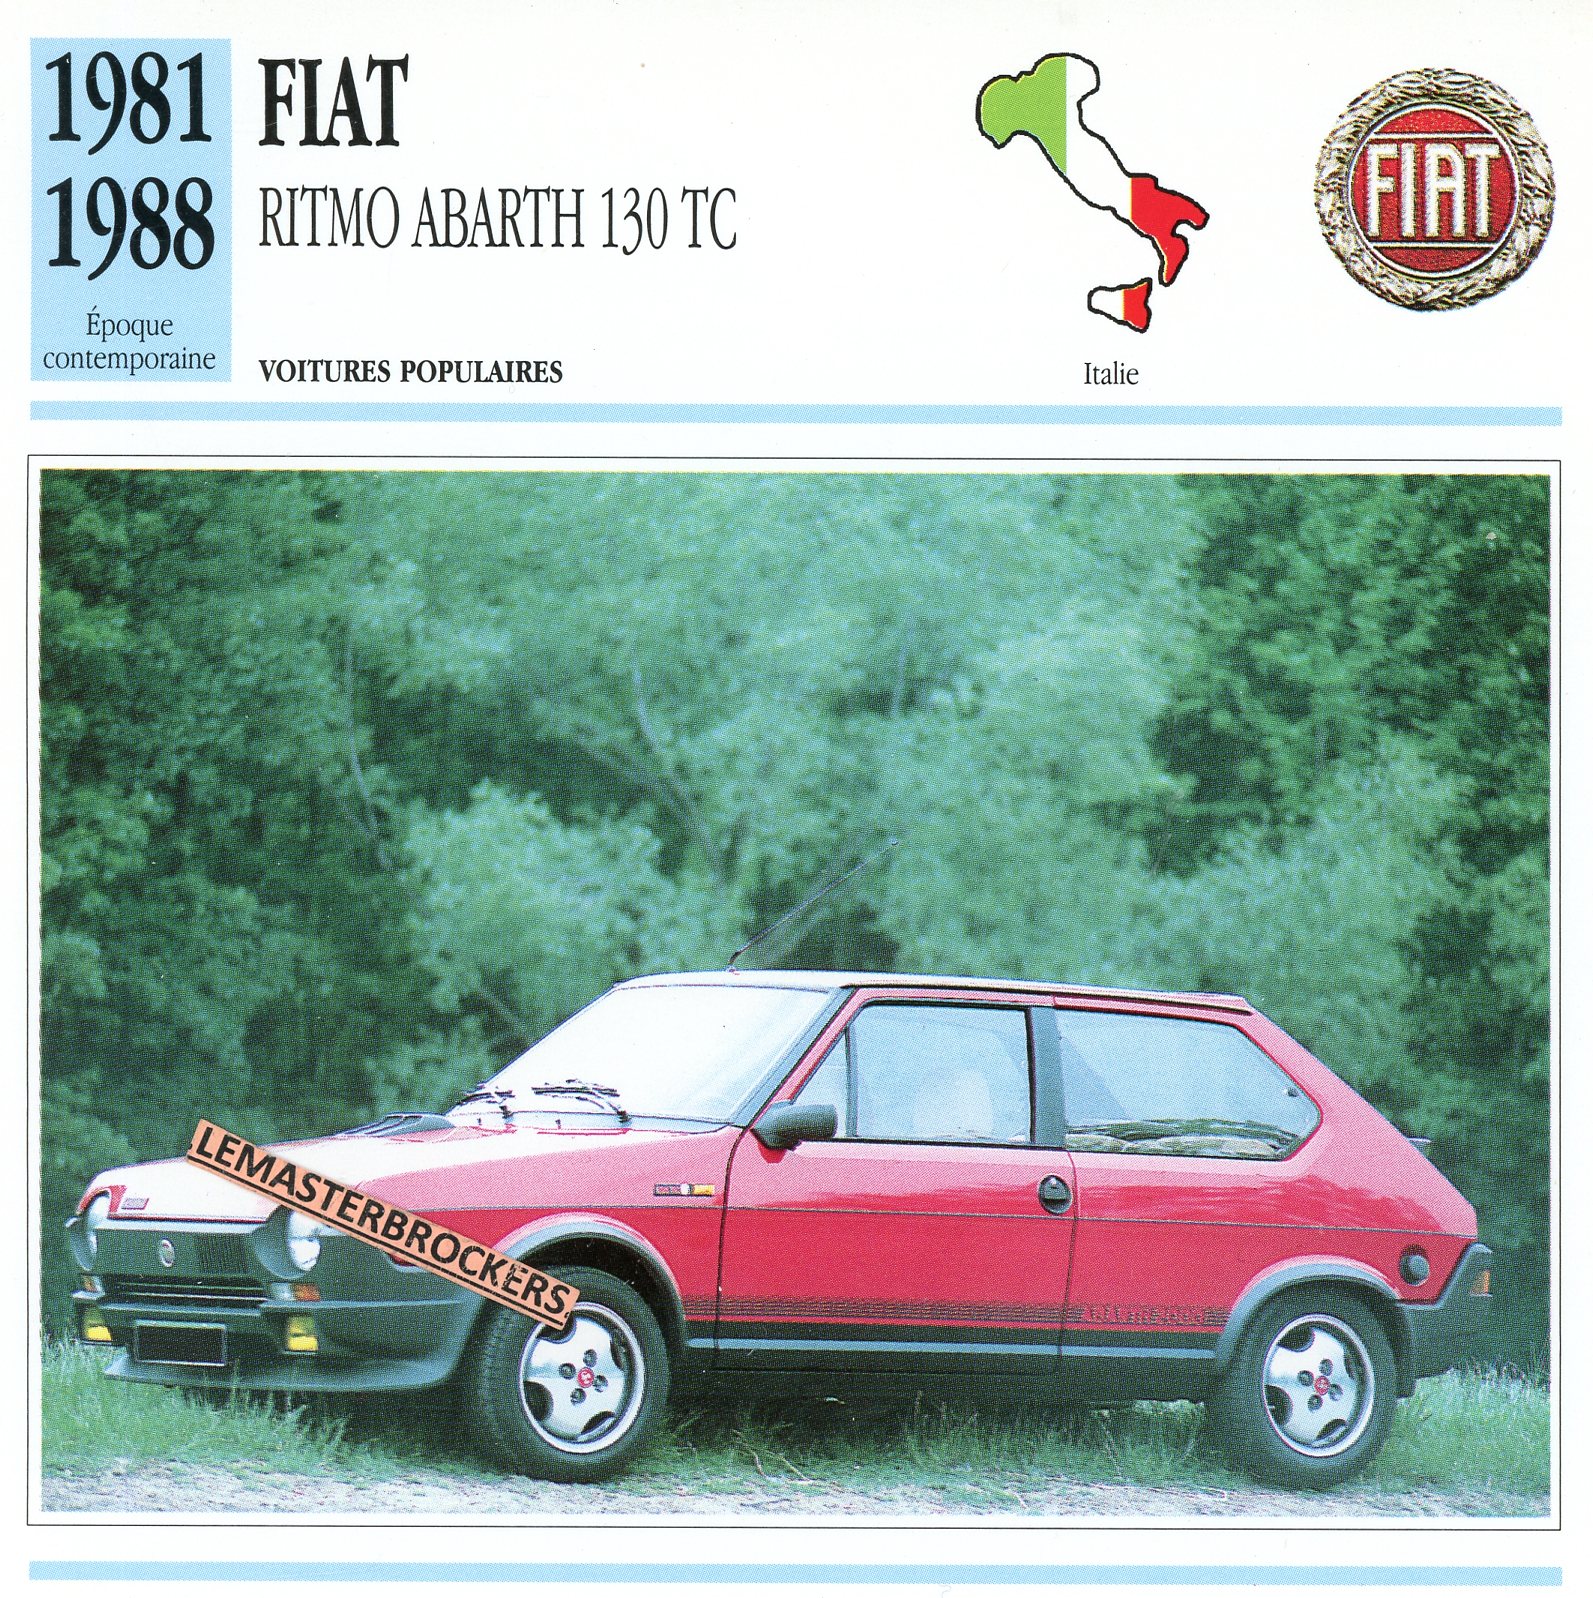 FIAT RITMO ABARTH 130 TC 1981 1988 - FICHE AUTO ATLAS - CARS CARD